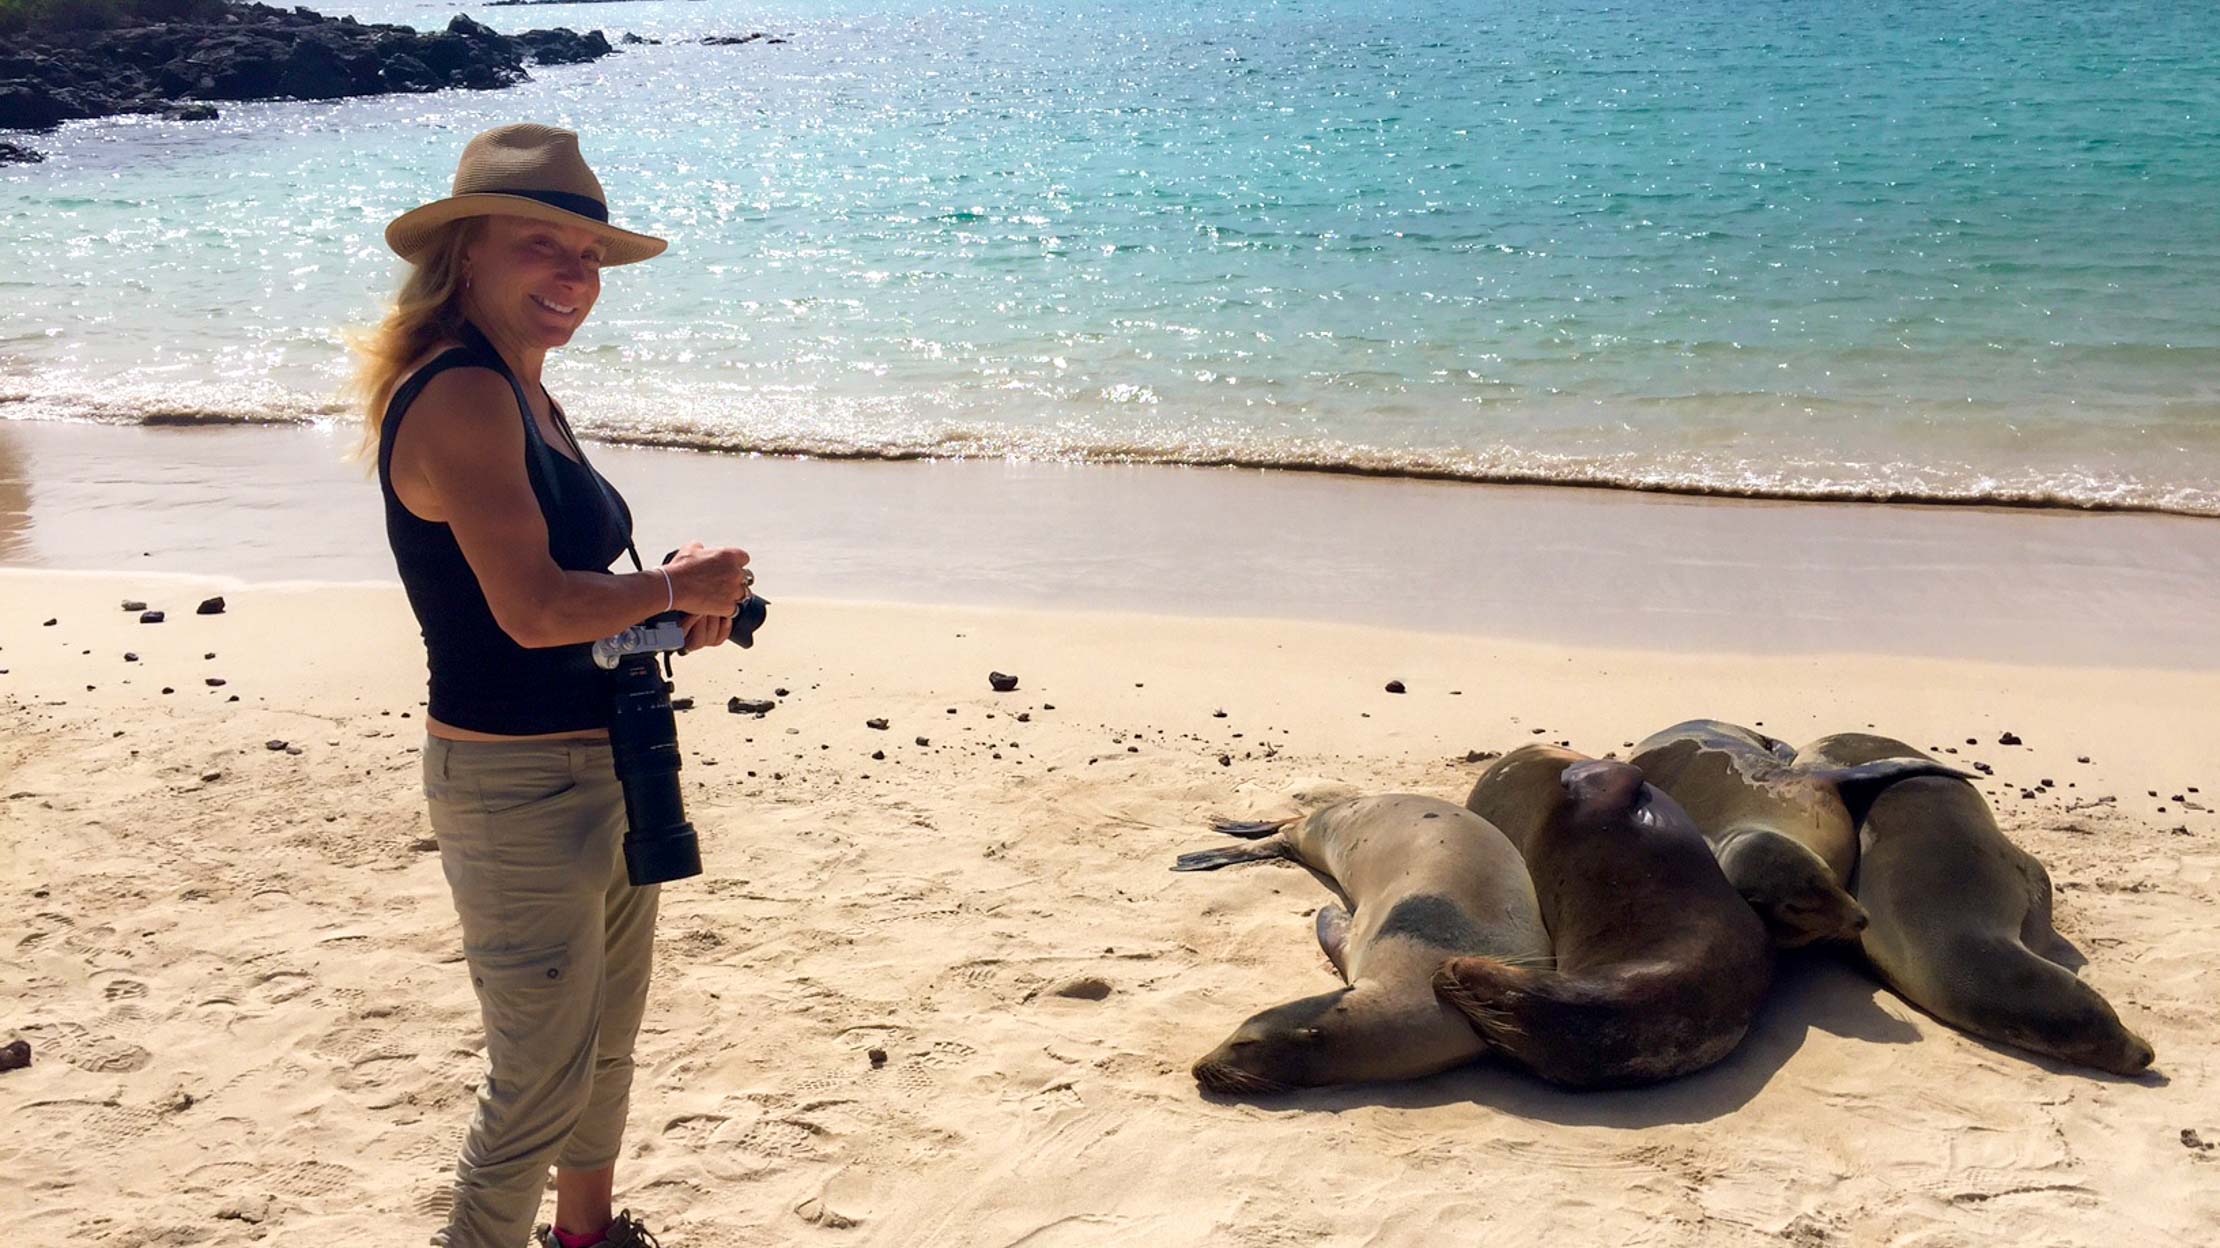 Lauren Hefferon next to seals in the Galapagos Islands